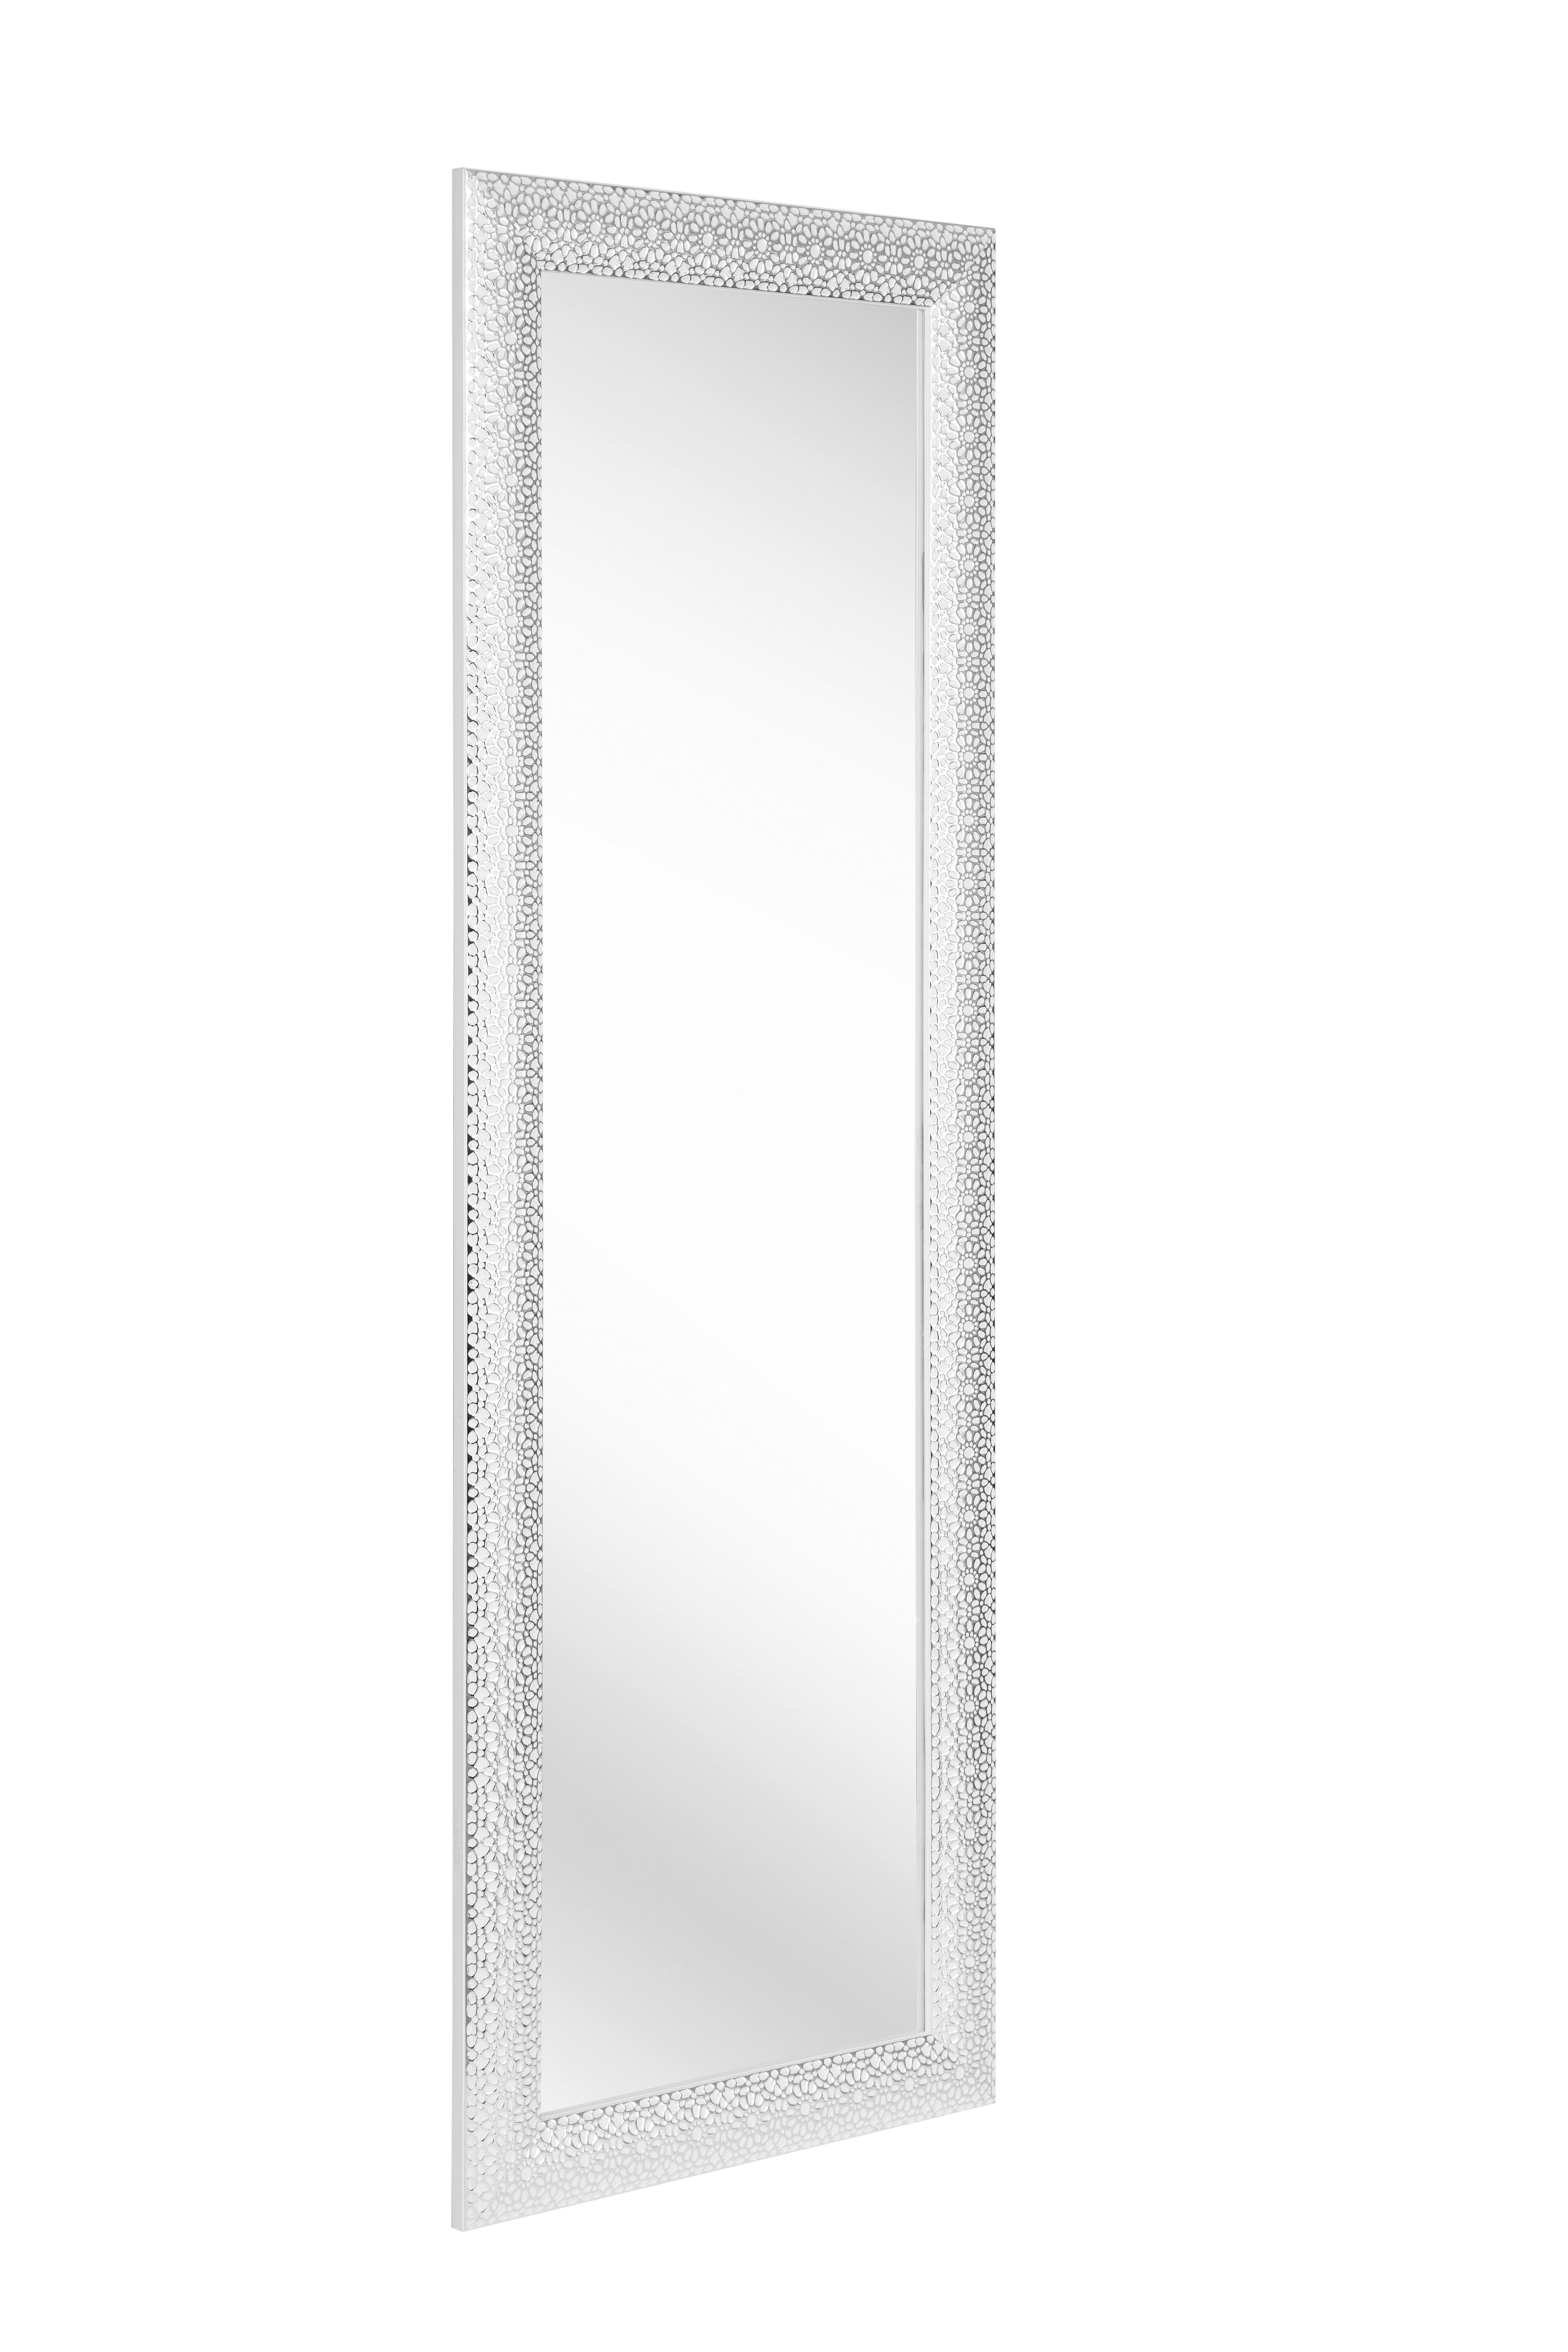 WANDSPIEGEL Silberfarben, Weiß  - Silberfarben/Weiß, LIFESTYLE, Glas/Kunststoff (50/150/3cm) - Xora